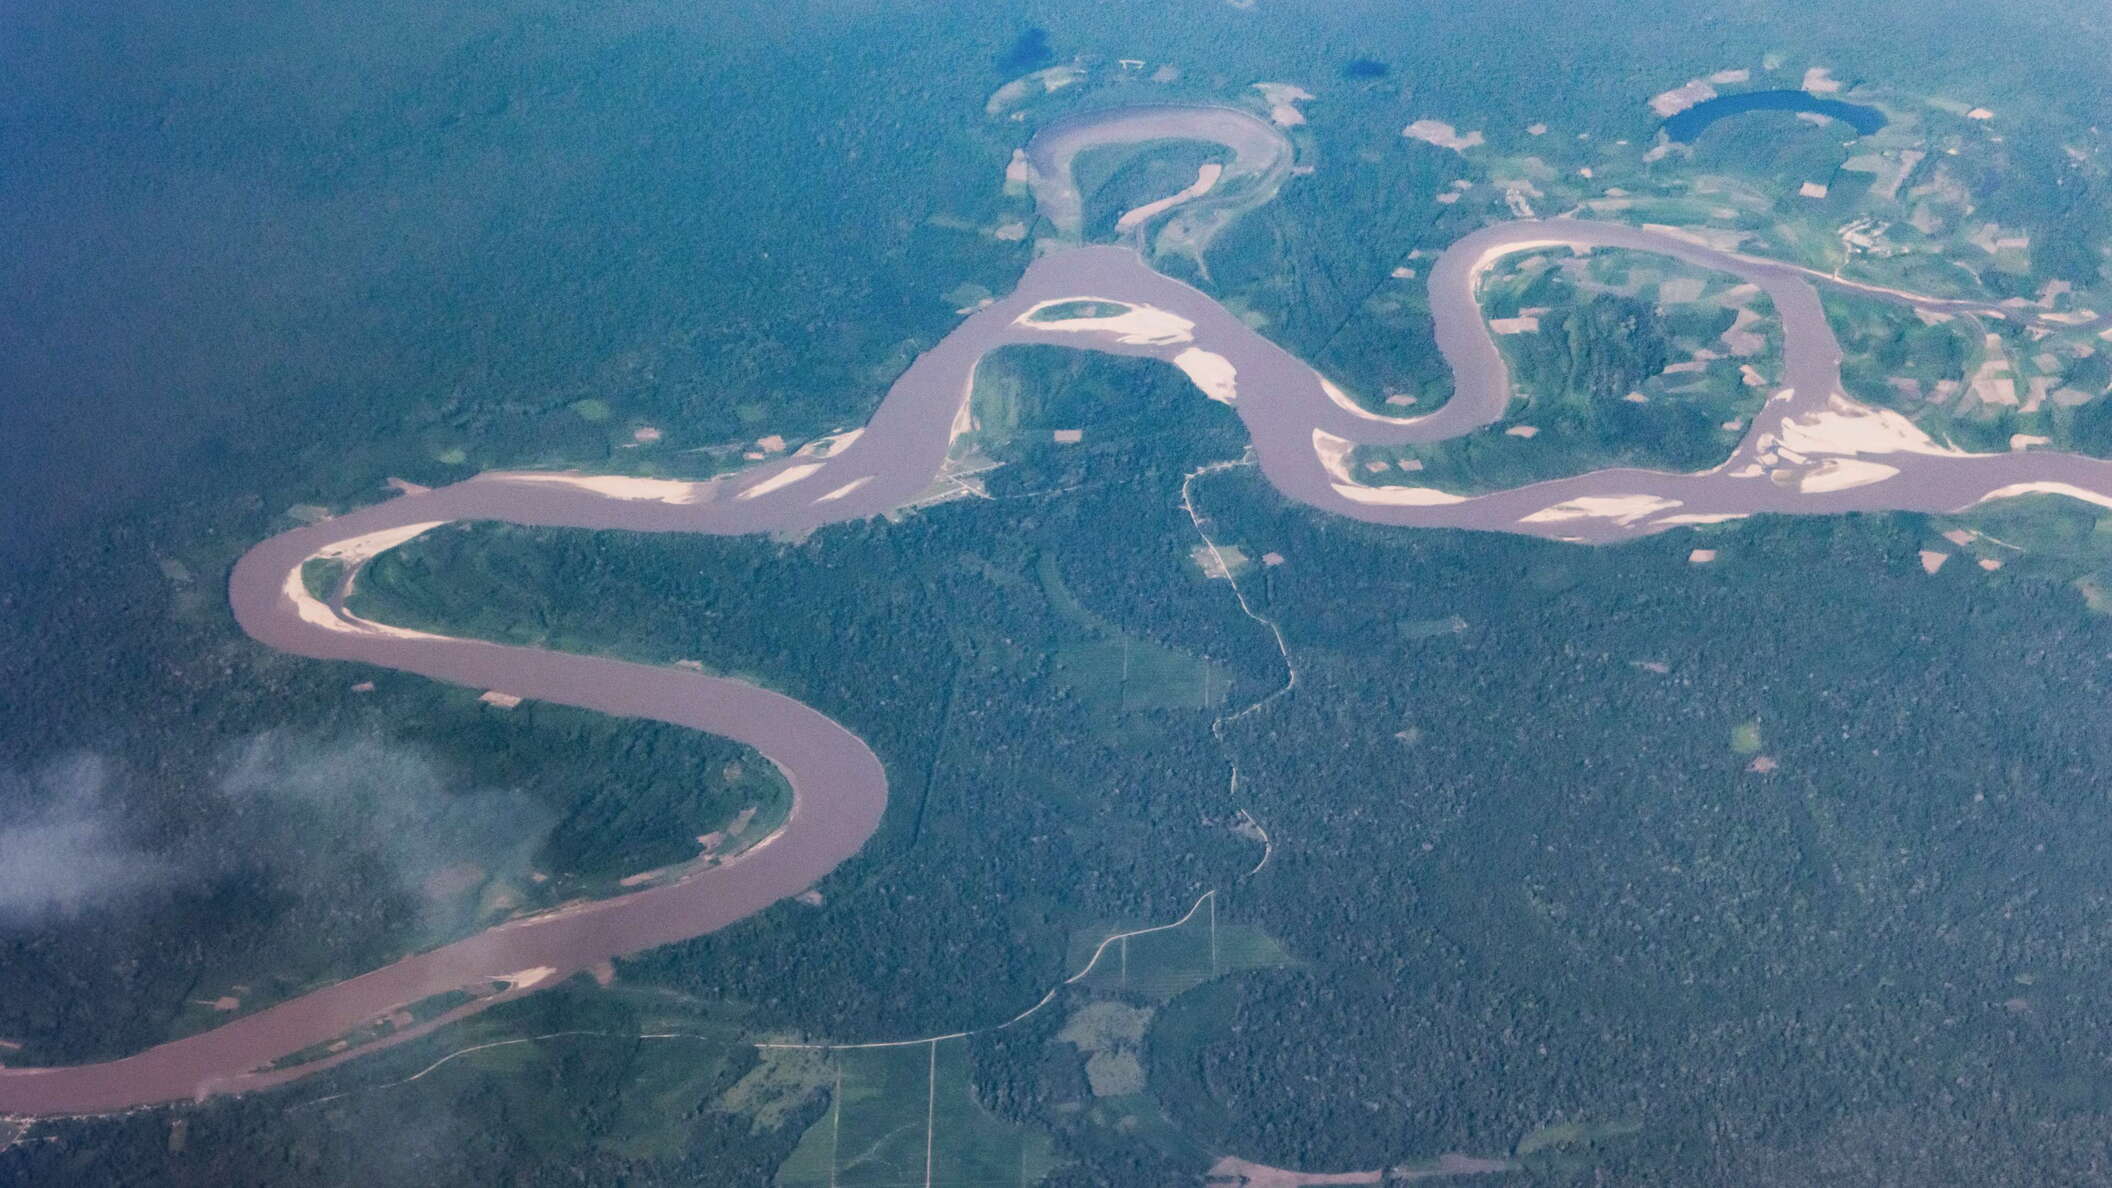 Río Huallaga